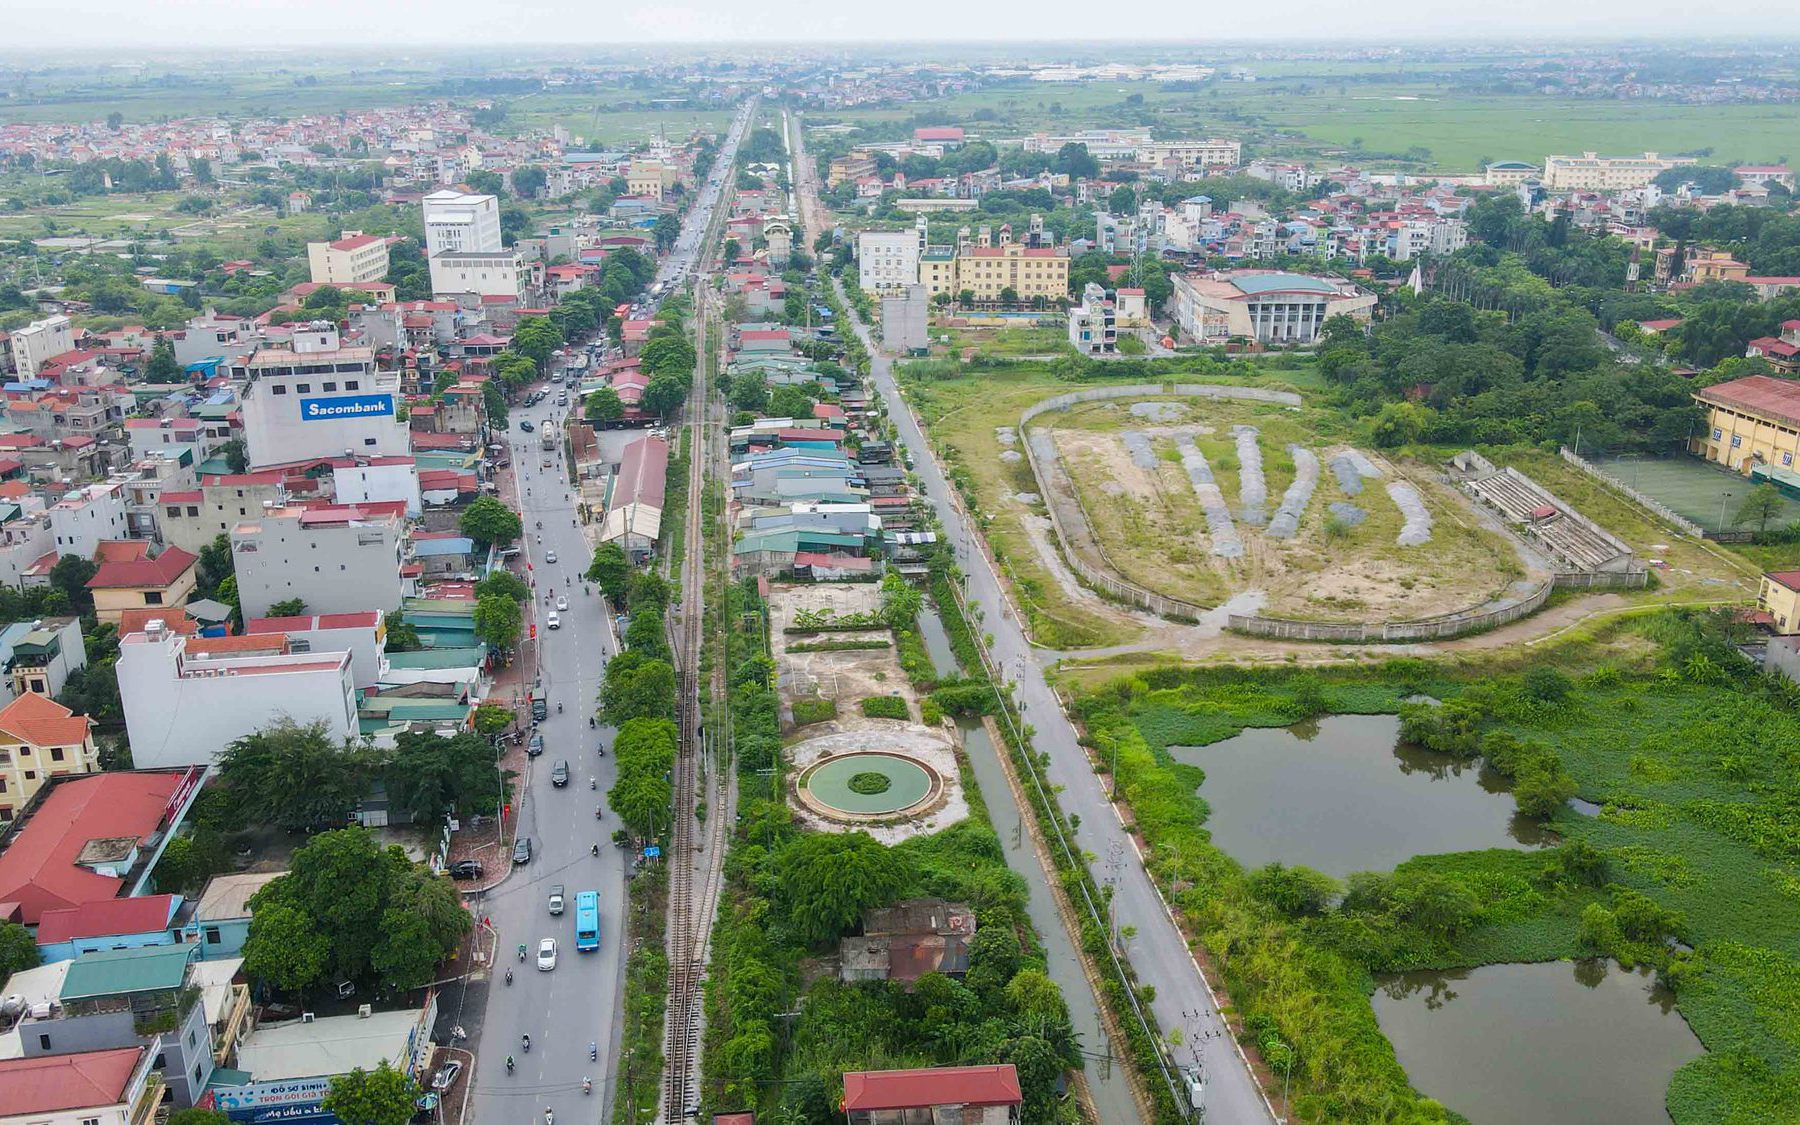 Toàn cảnh vị trí mới của ga Hà Nội ở Thường Tín và Ngọc Hồi sau khi dịch chuyển